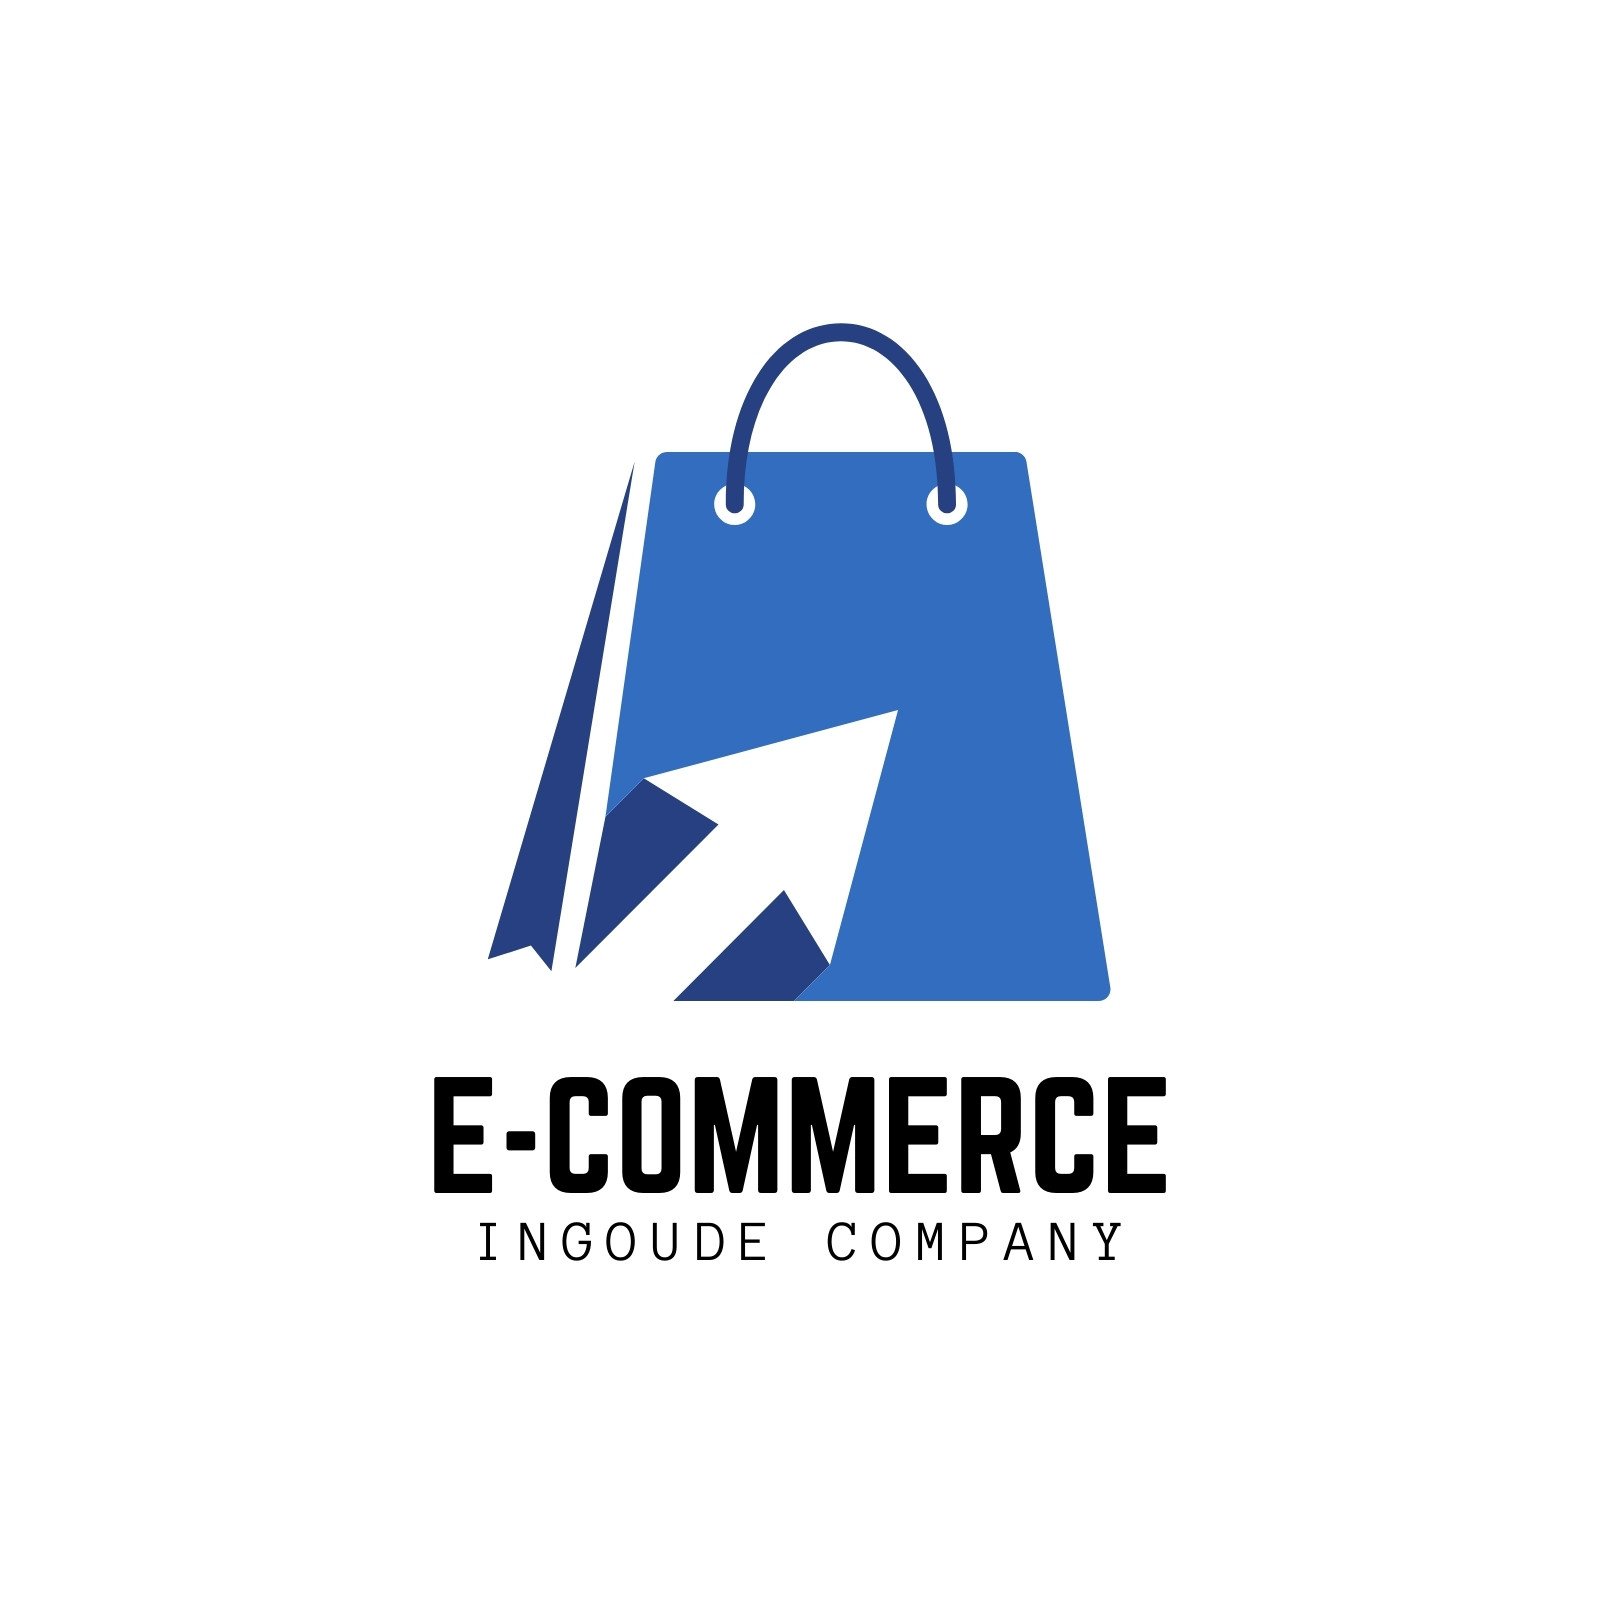 Shopping bag gold logo vector image | Boutique logo design, Online logo  design, Logo design inspiration creative